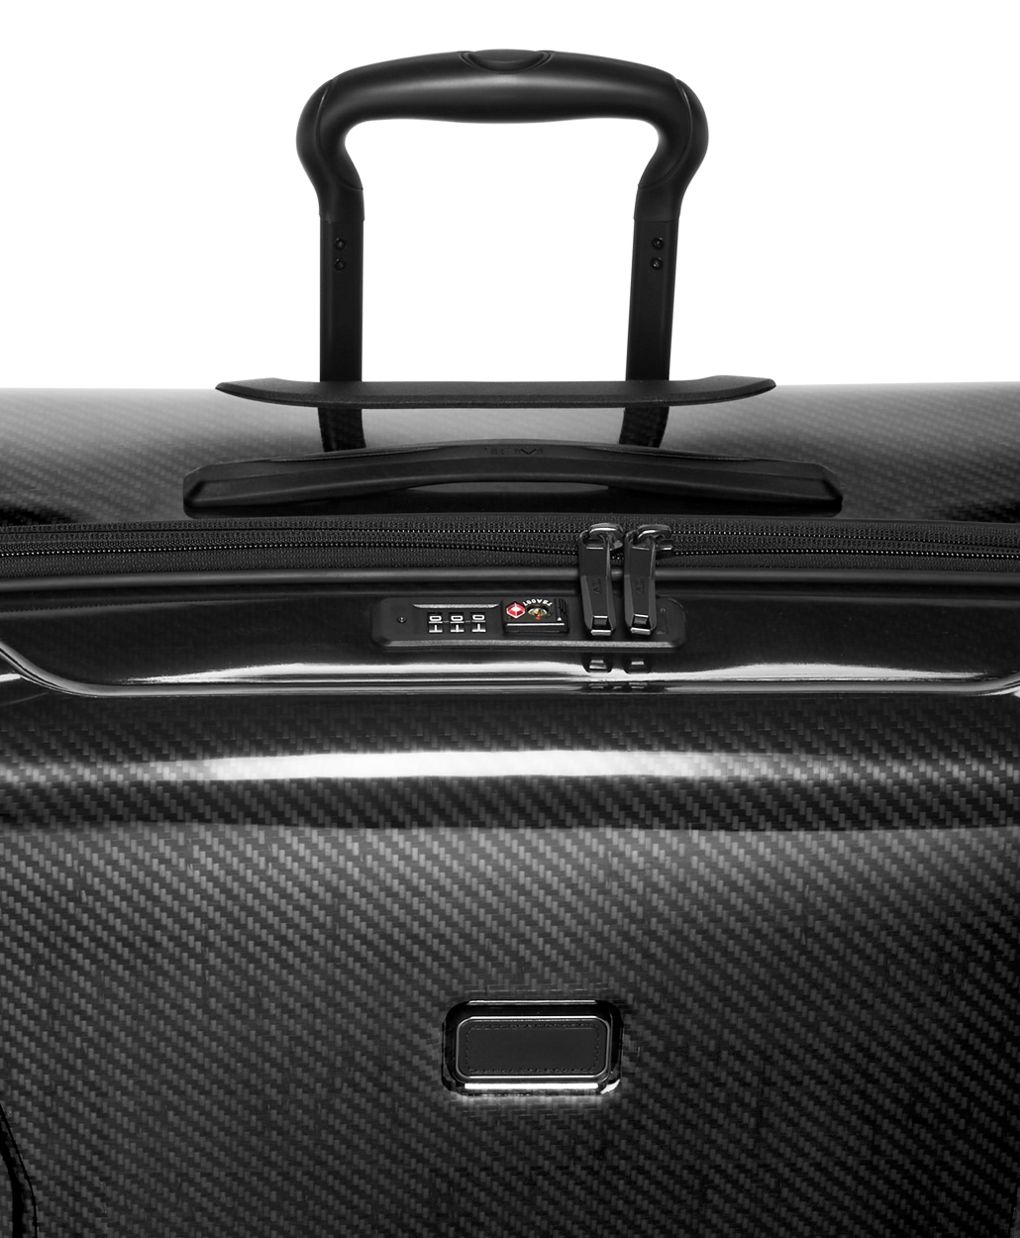 Tumi Vapor Lite Large Trip Packing Case